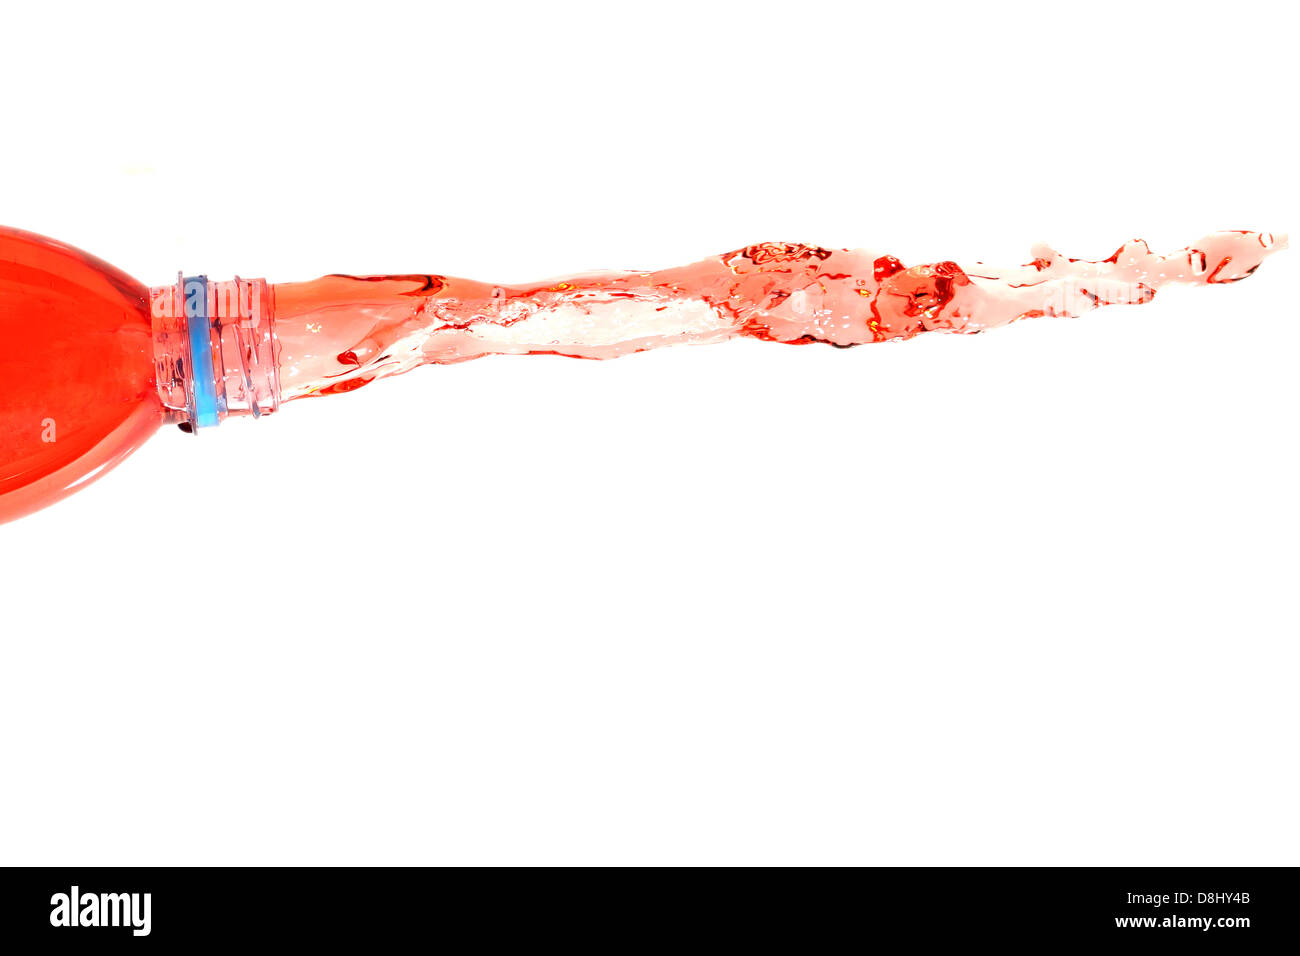 Das rote Wasser, das aus der Flasche auf dem weißen Hintergrund verteilt. Stockfoto